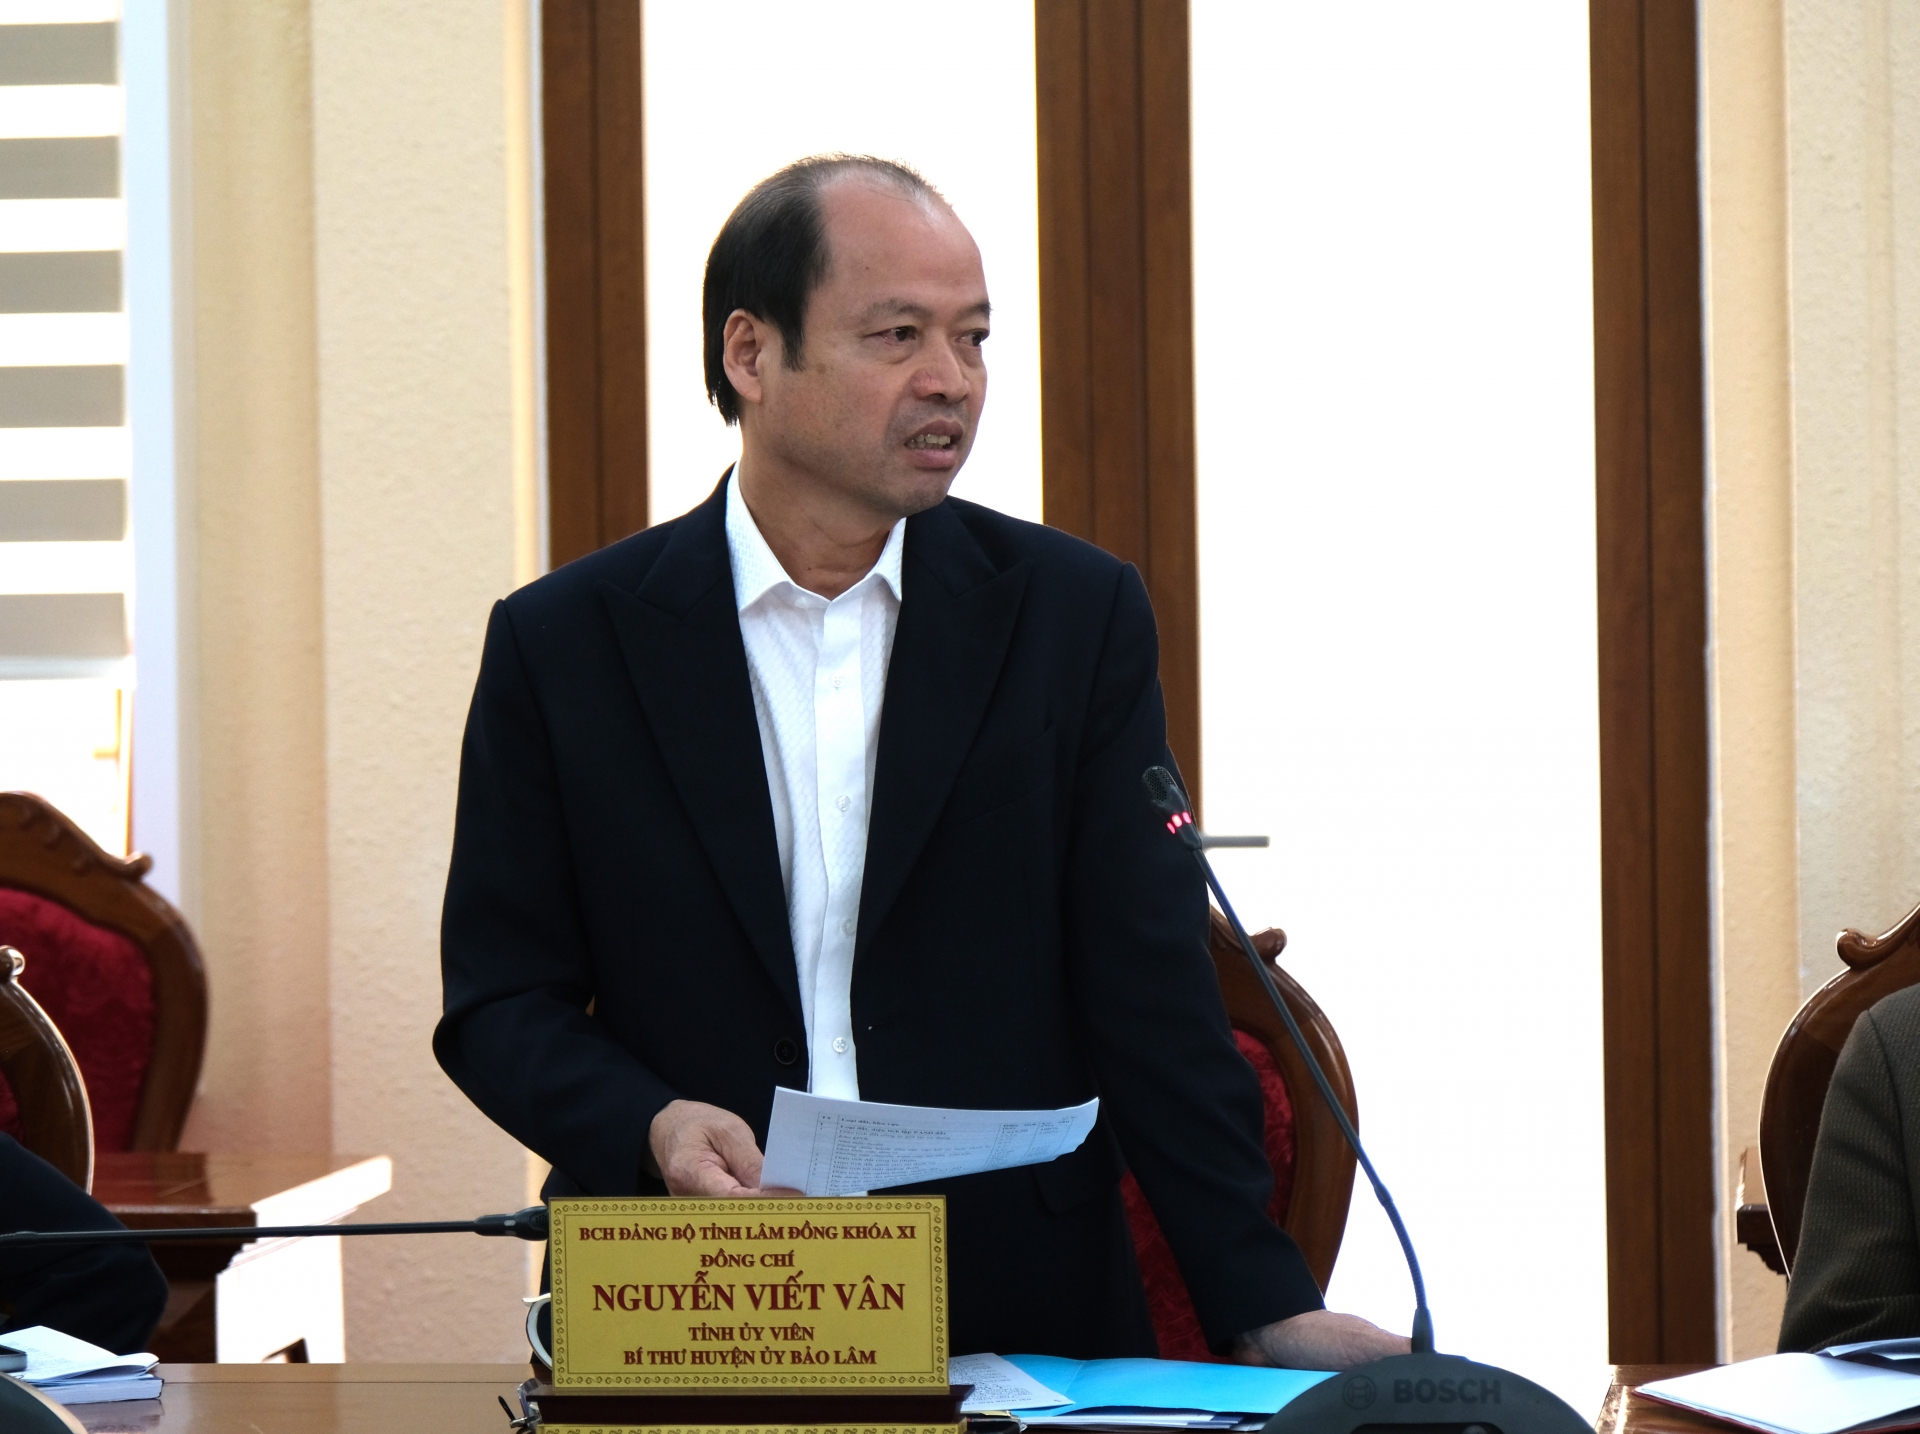 Đồng chí Nguyễn Viết Vân - Bí thư Huyện ủy Bảo Lâm trình bày những khó khăn, vướng mắc mà địa phương đang gặp phải